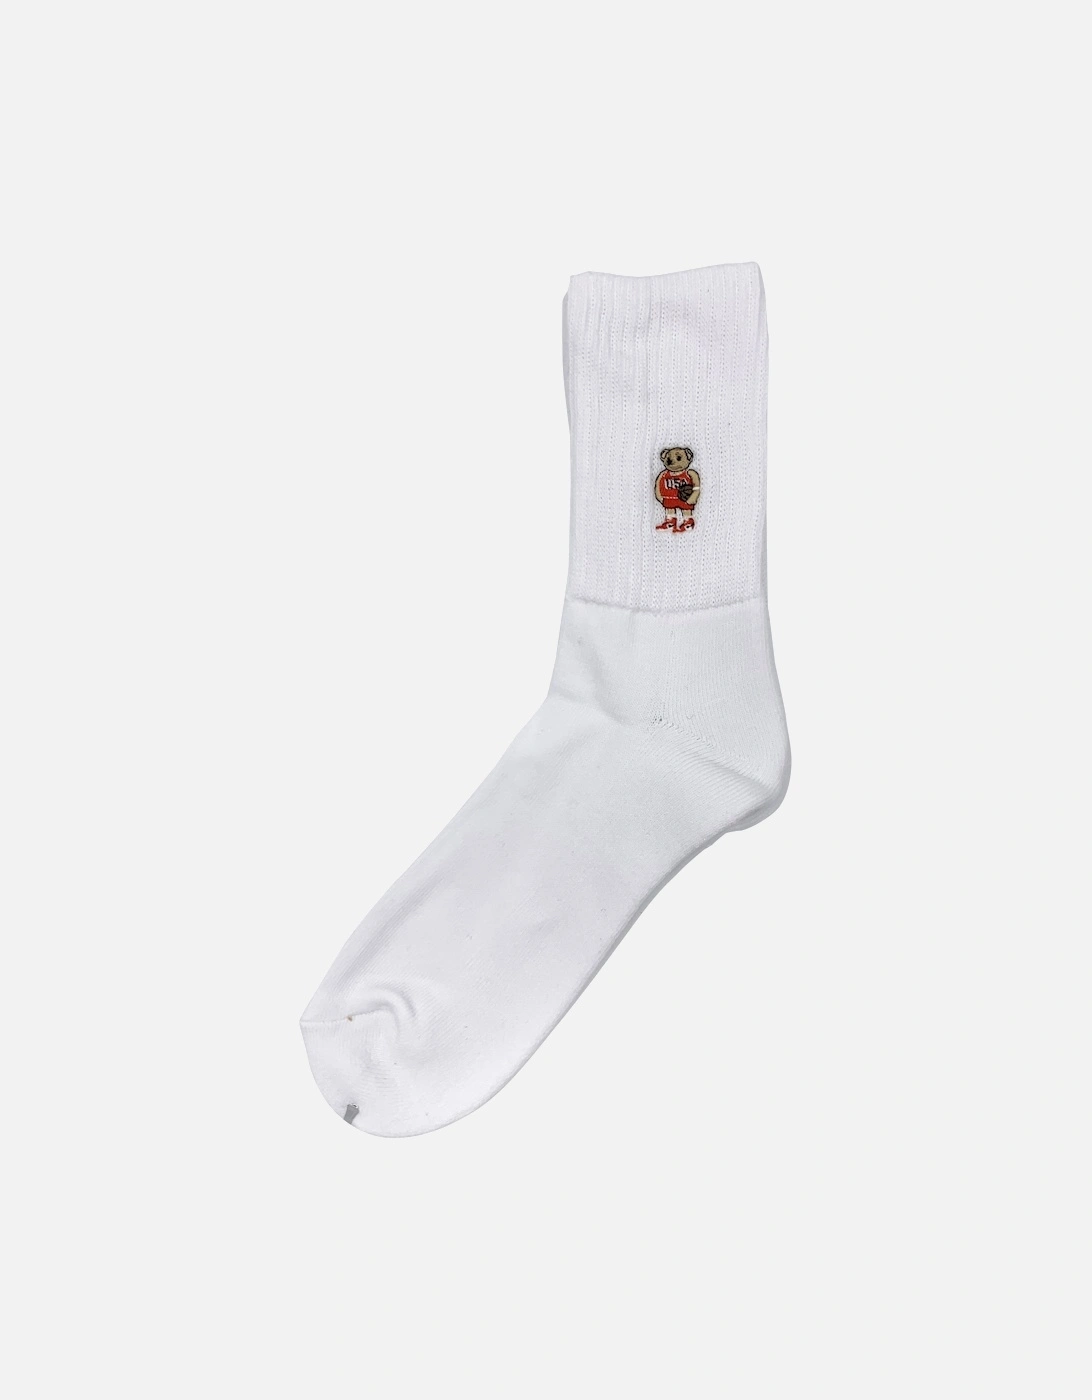 Rostersox's Bear Socks - White